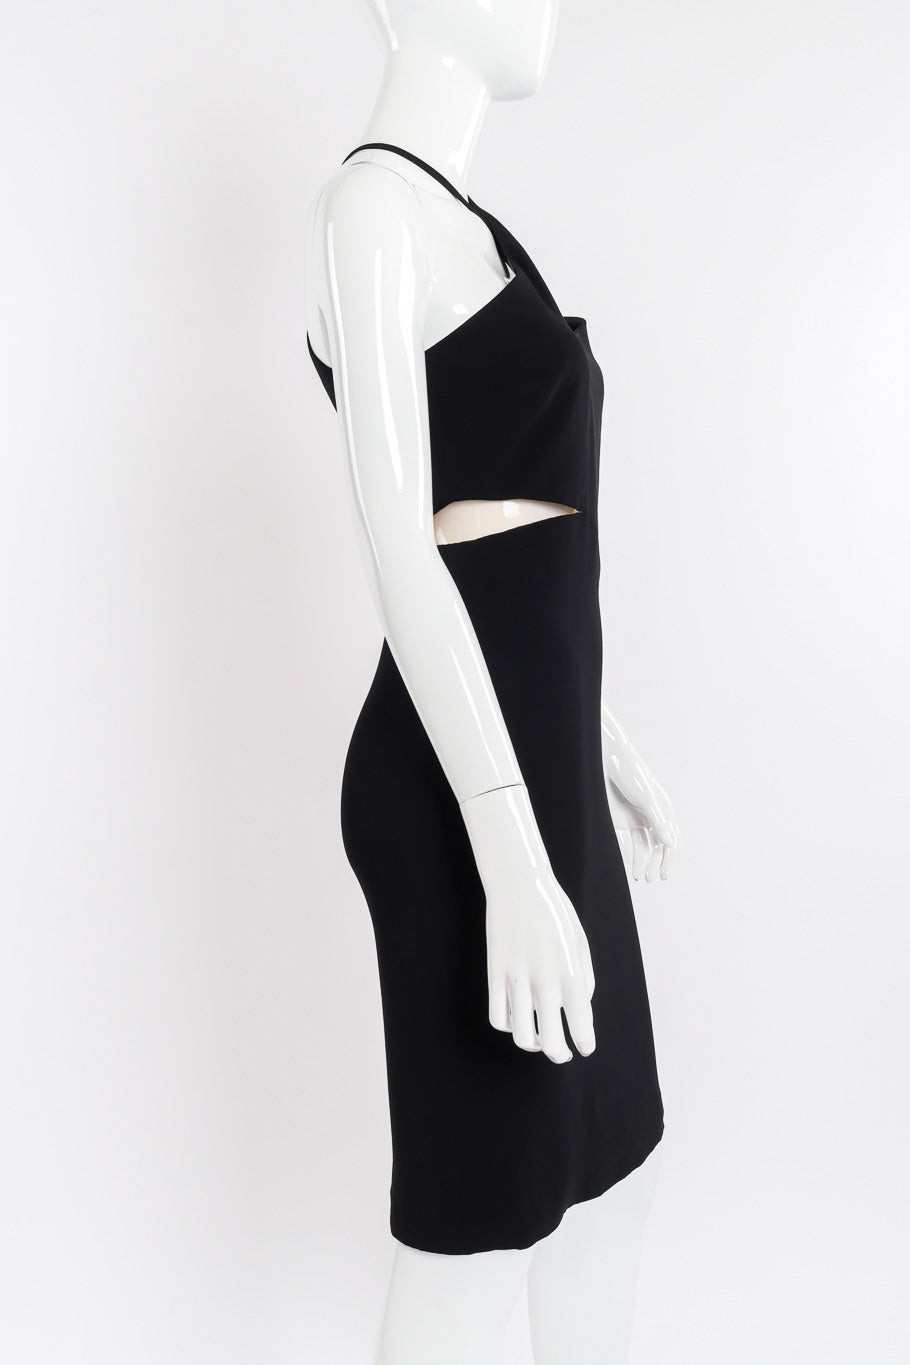 Versace Asymmetric Cut-Out Dress side view closeup on mannequin @Recessla 